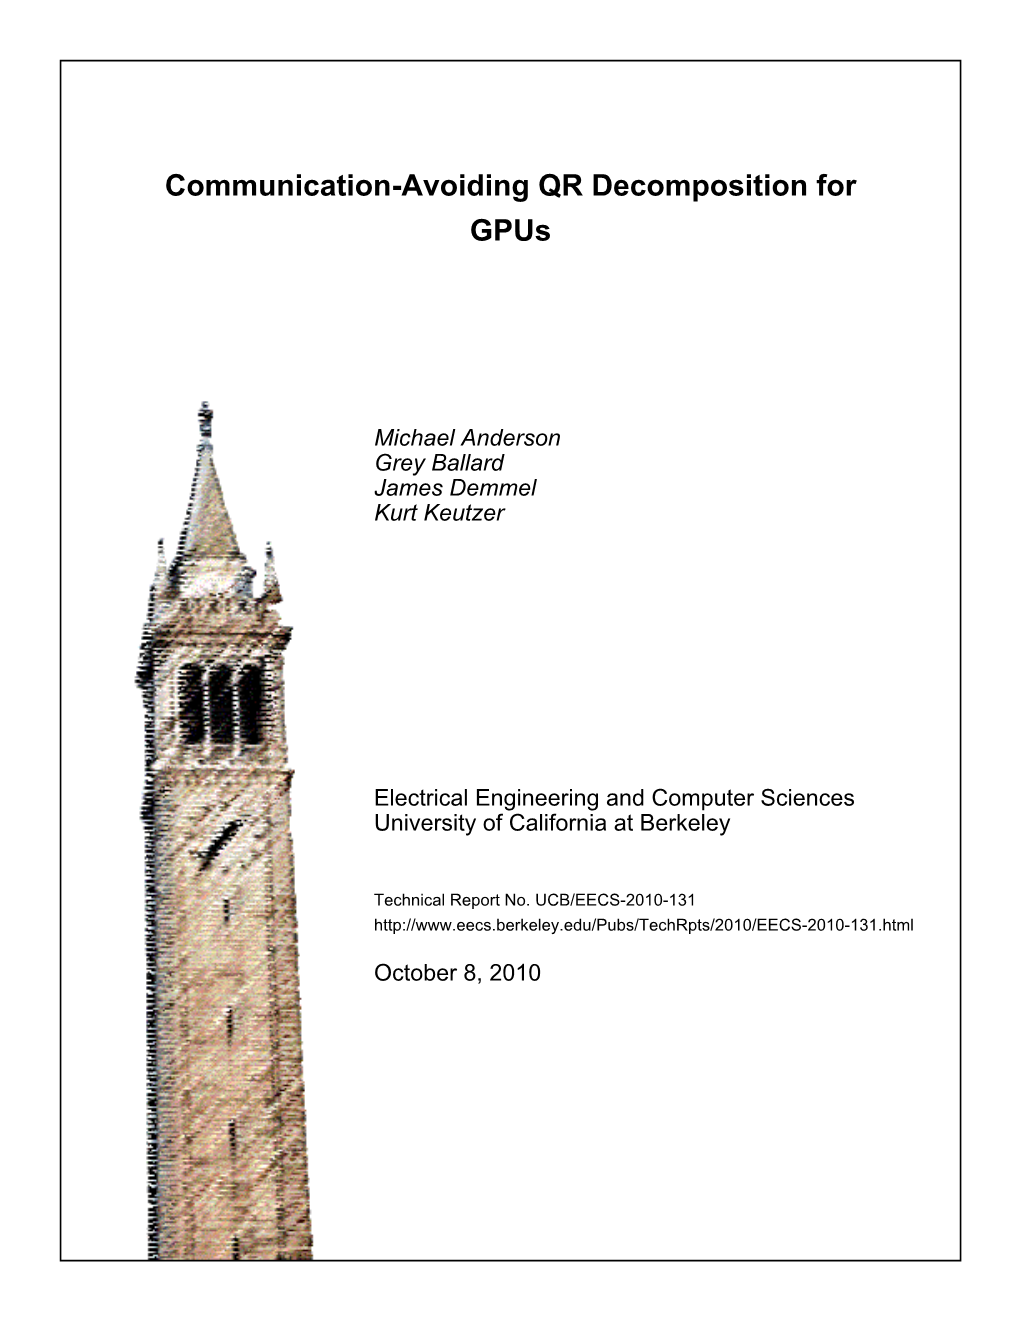 Communication-Avoiding QR Decomposition for Gpus